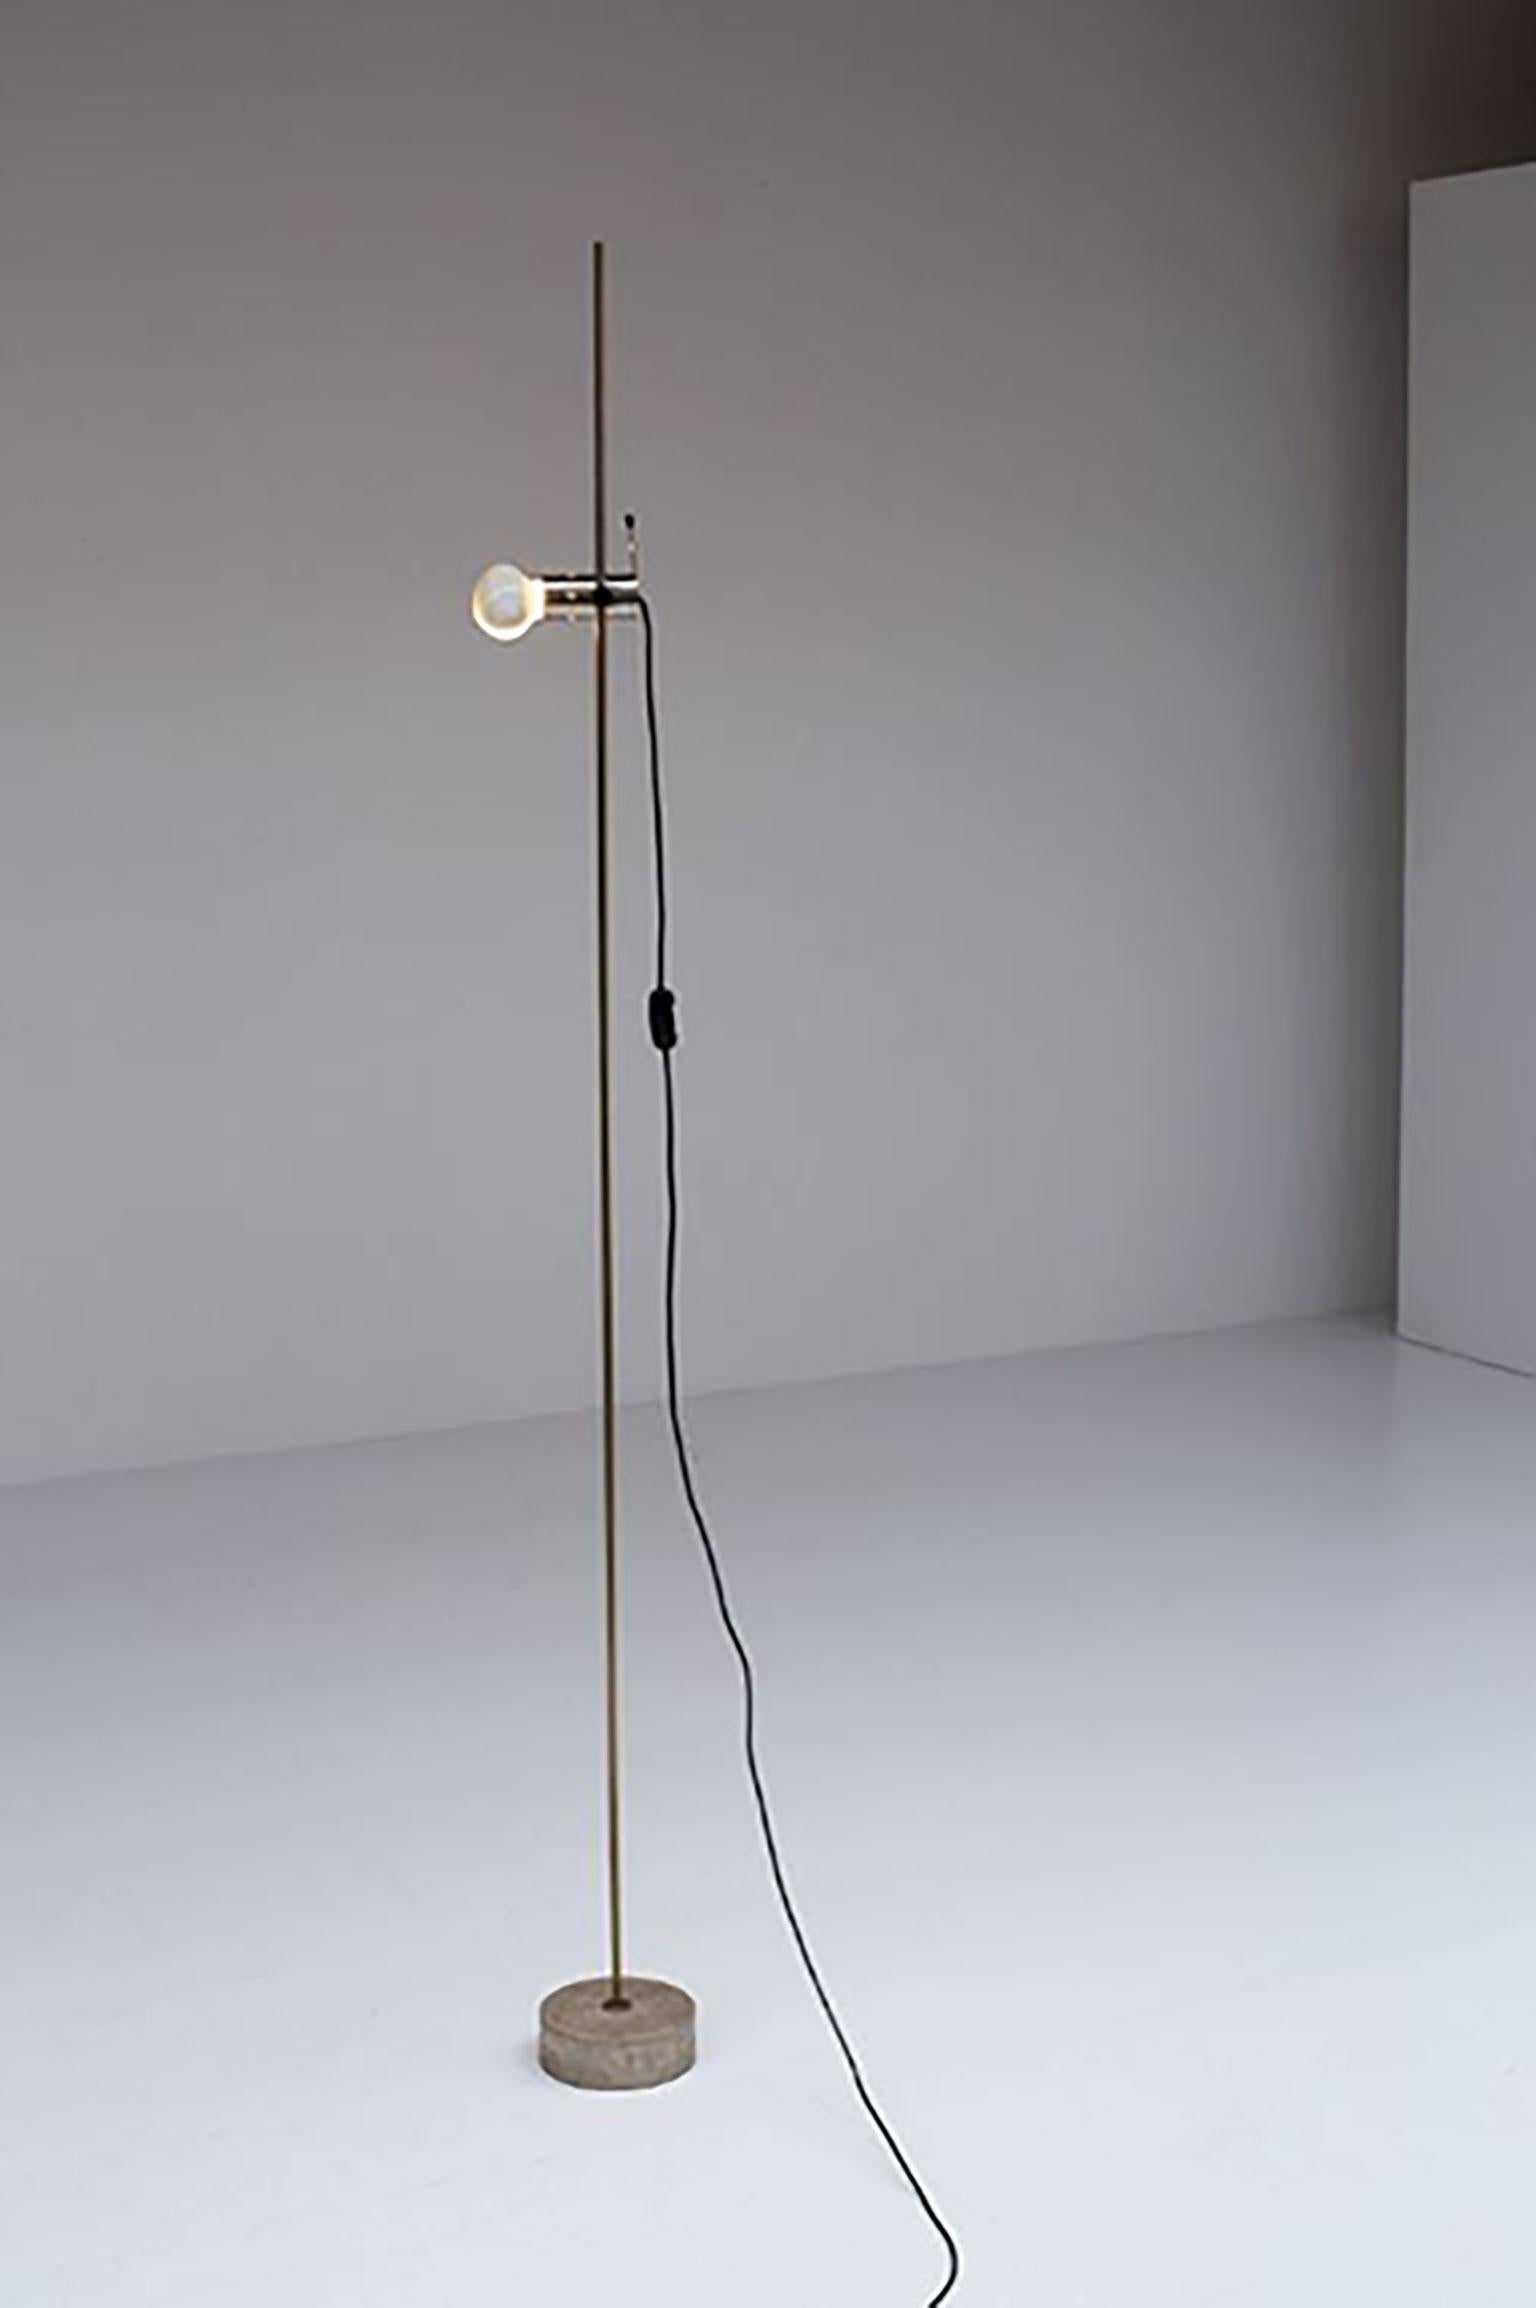 Lampadaire Agnoli de Tito Agnoli pour Oluce. La lampe tient son nom du designer qui a été nommé deux fois pour le prix Compasso d'Oro et a reçu la médaille d'or à Neocon à Chicago. Superbe exemple de design minimaliste, ce modèle de lampadaire donne